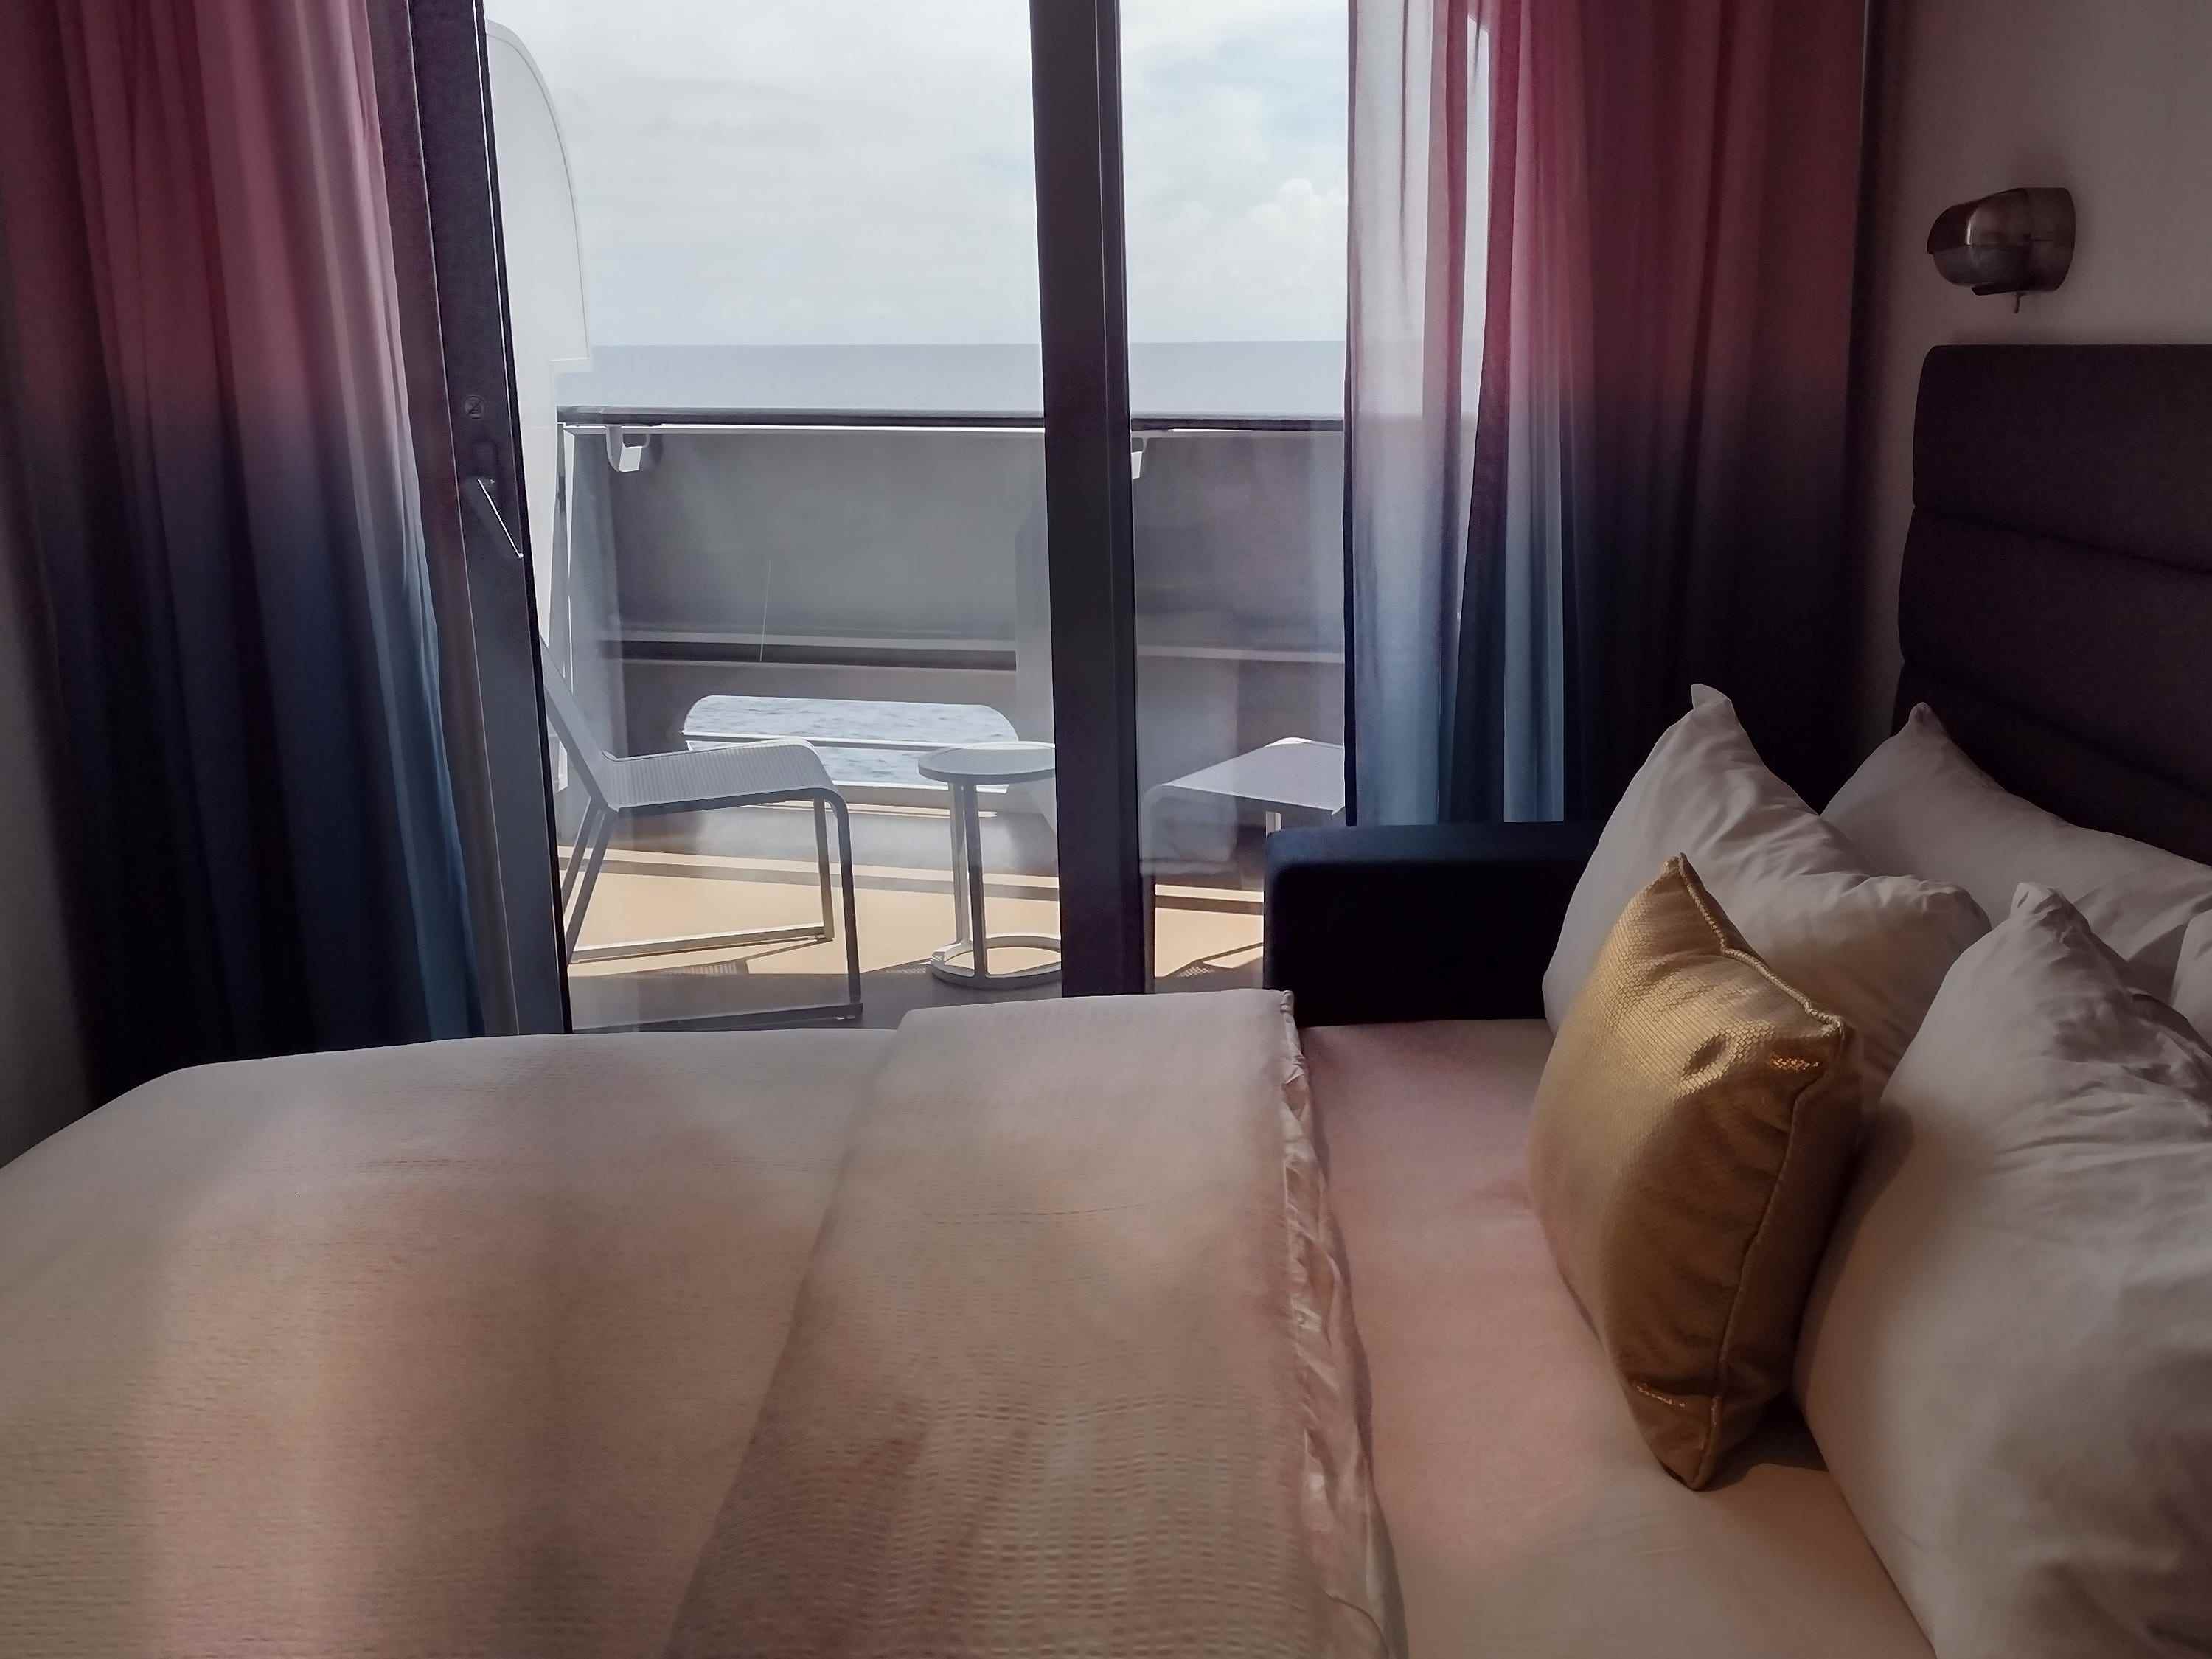 Ein Bett auf einem Kreuzfahrtschiff mit offenen Vorhängen, die den Balkon zeigen.